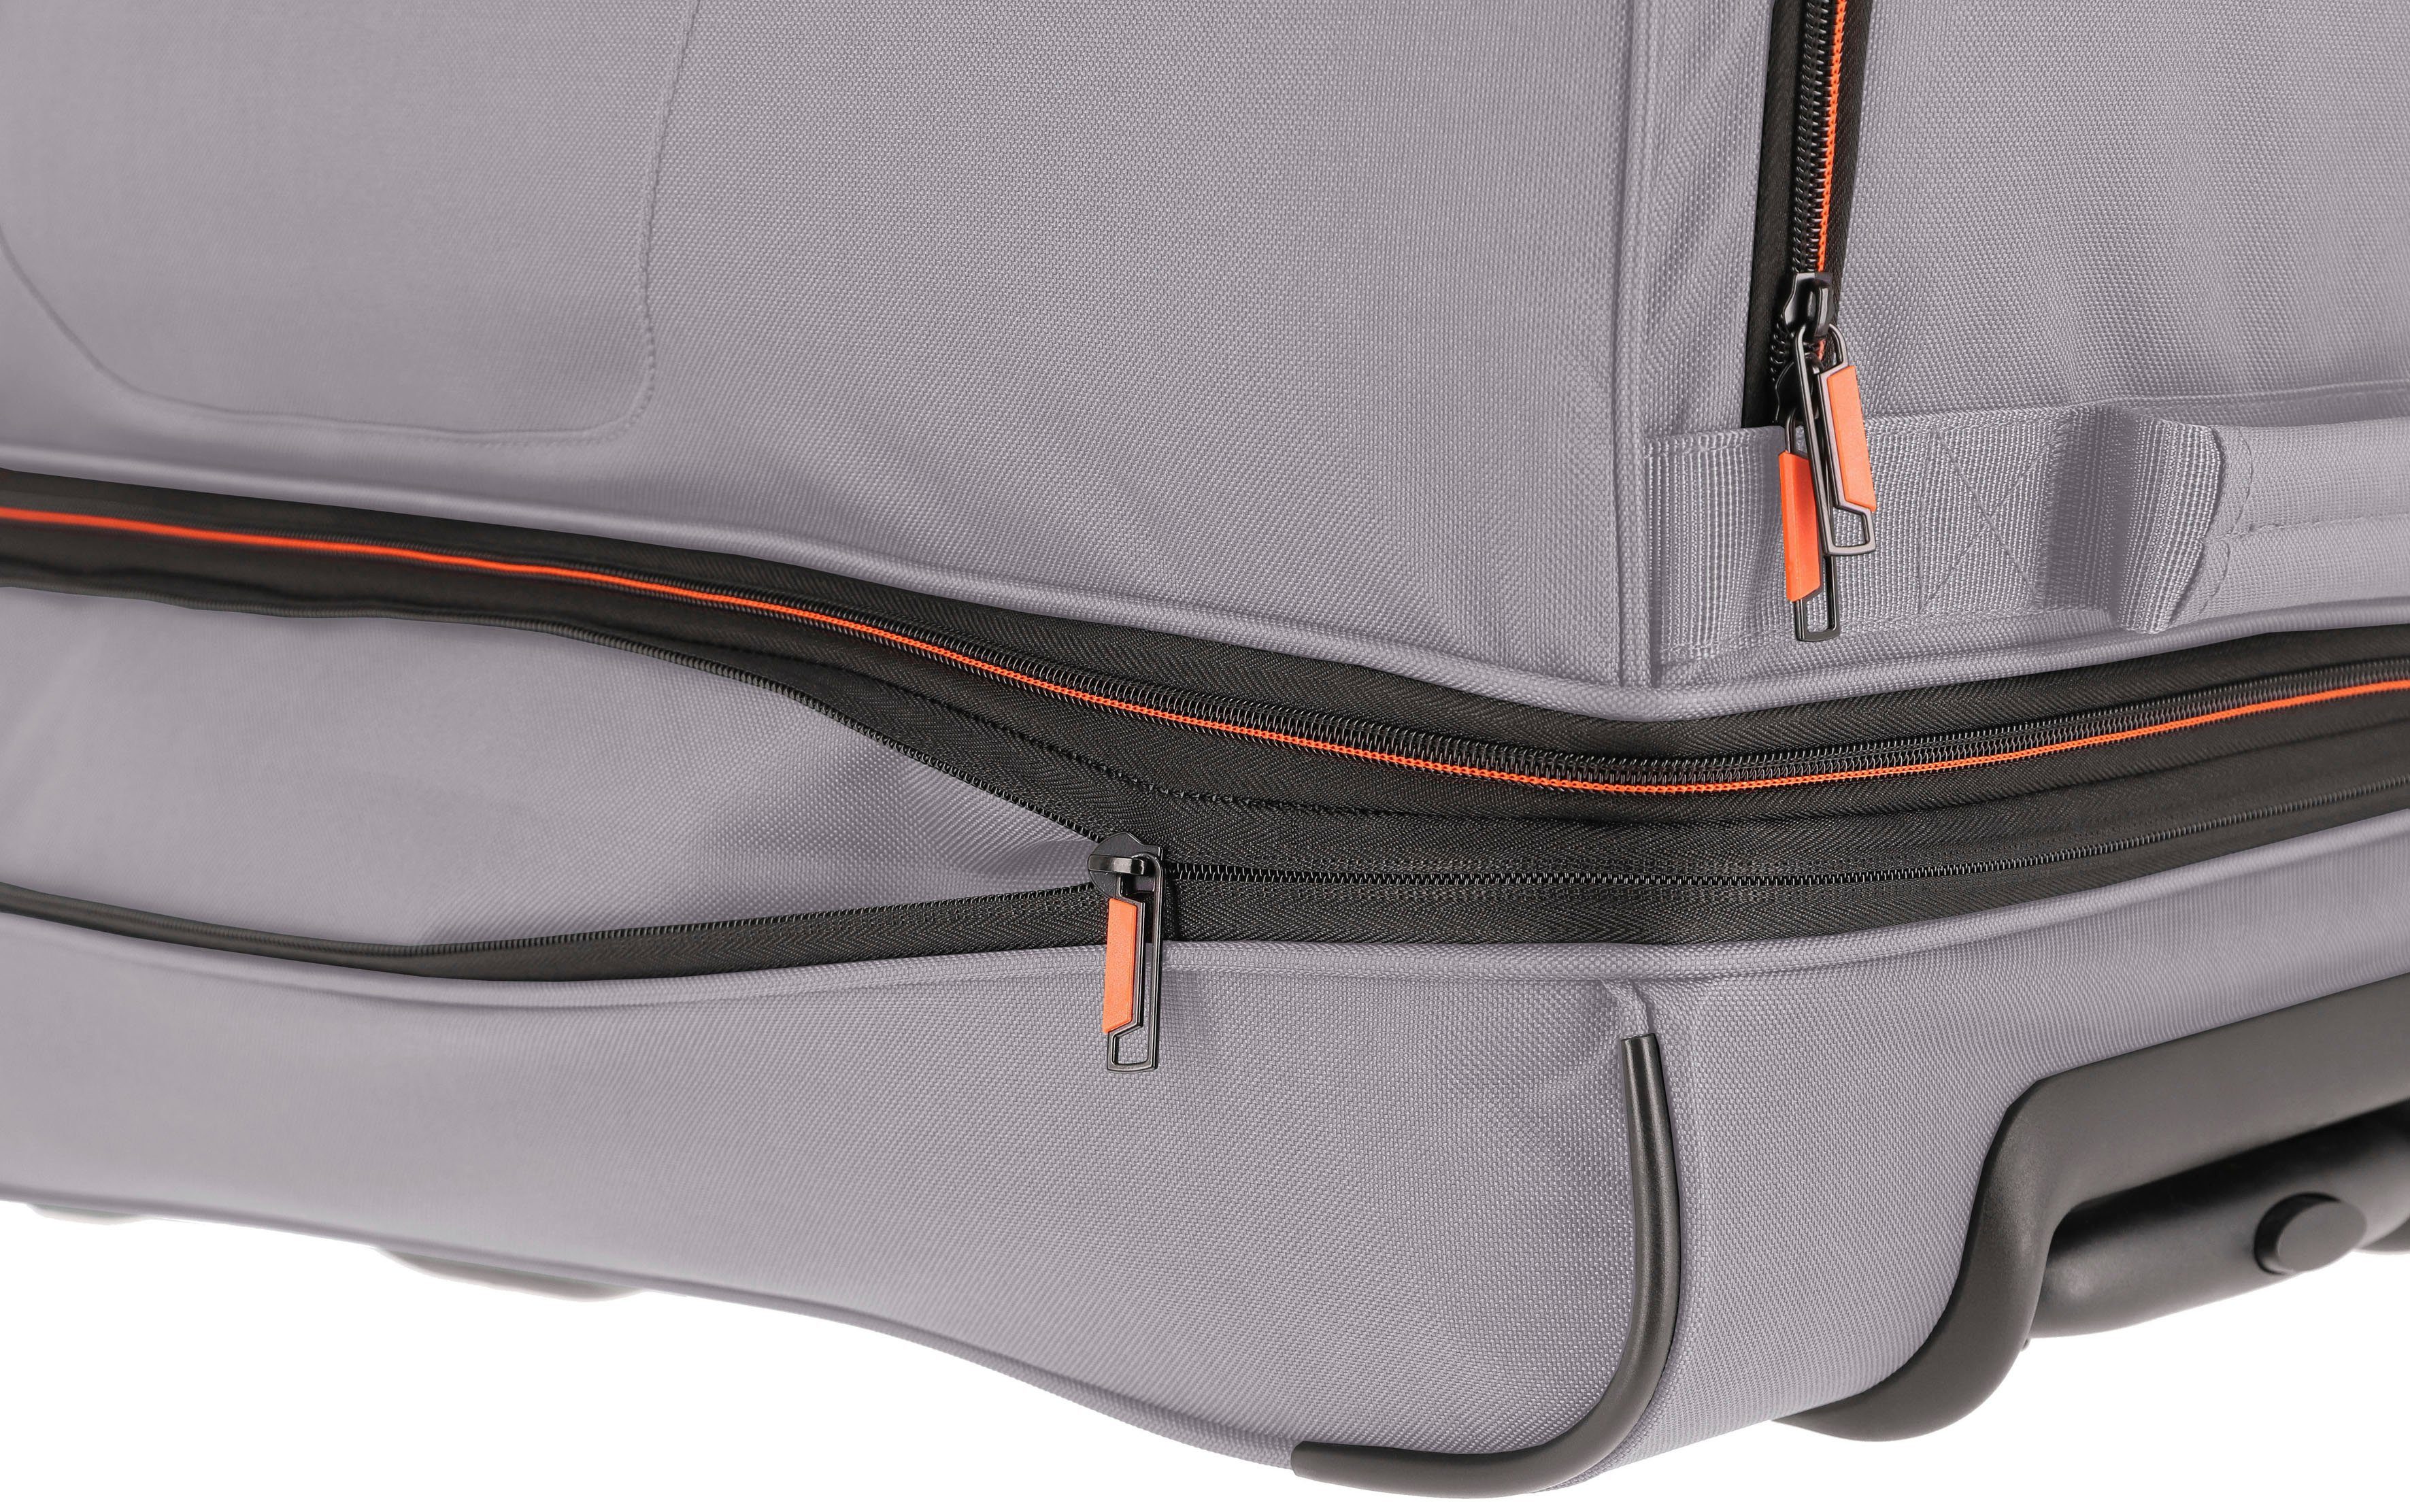 Basics, grau/orange, travelite Trolleyfunktion und 70 Reisetasche cm, Volumenerweiterung mit